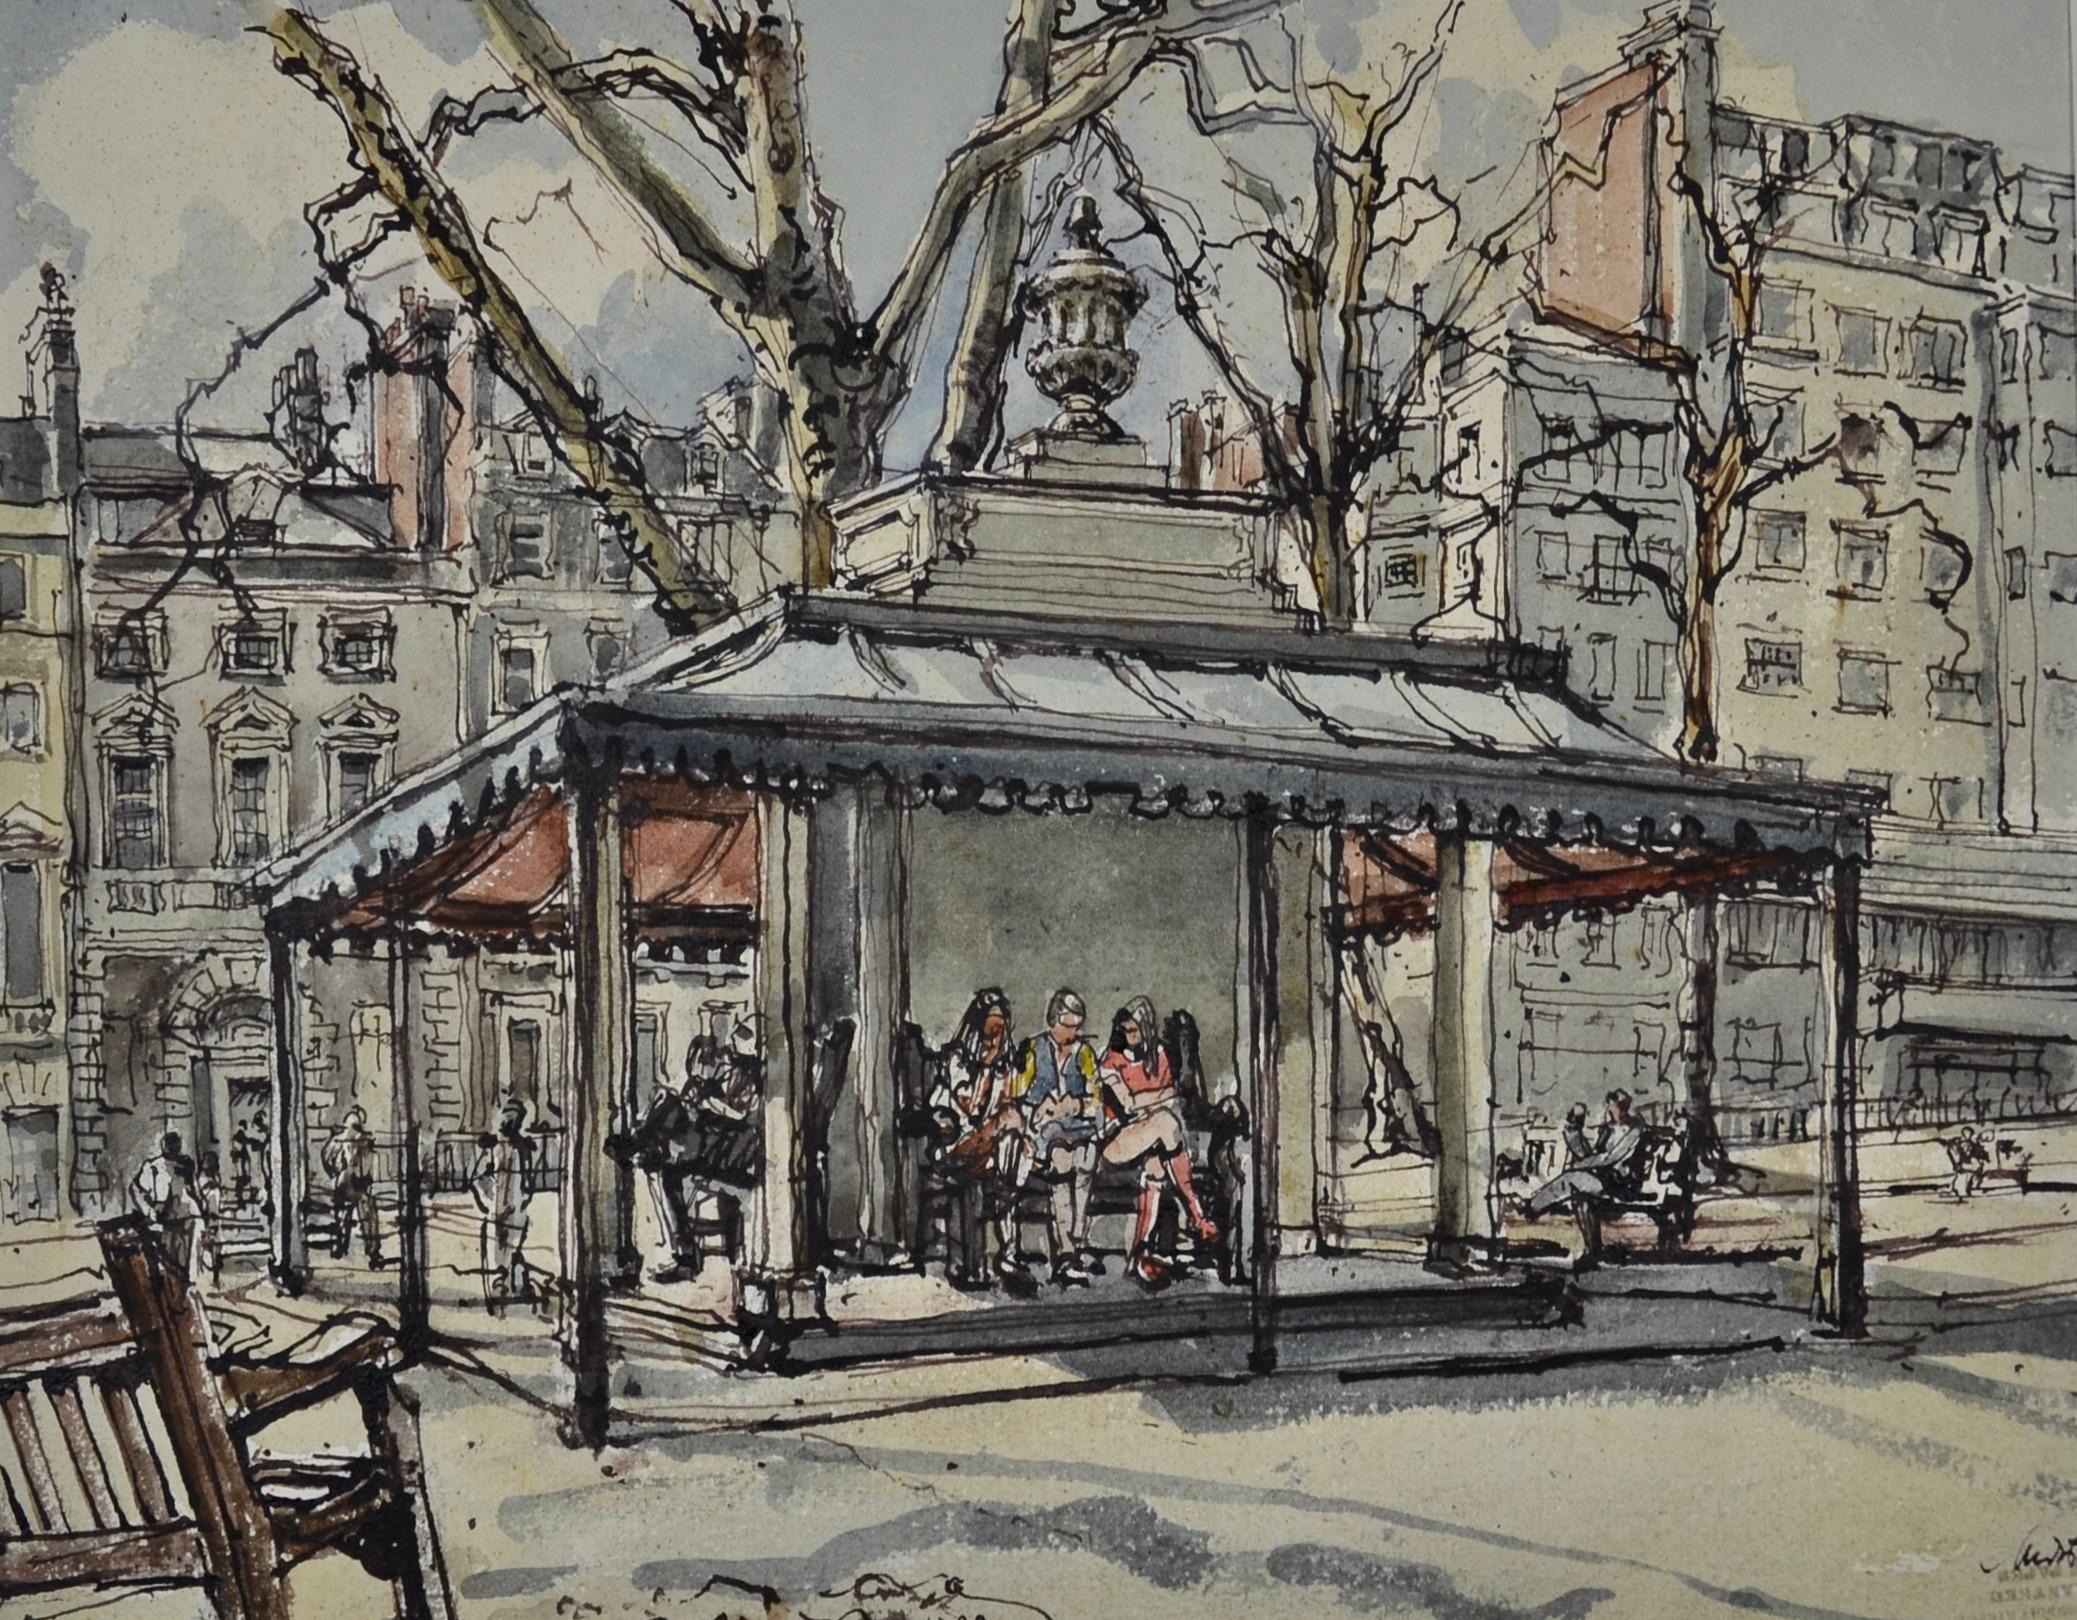 Marianne von Werther Landscape Art - Berkeley Square, London - 20th Century British watercolour by M von Werther